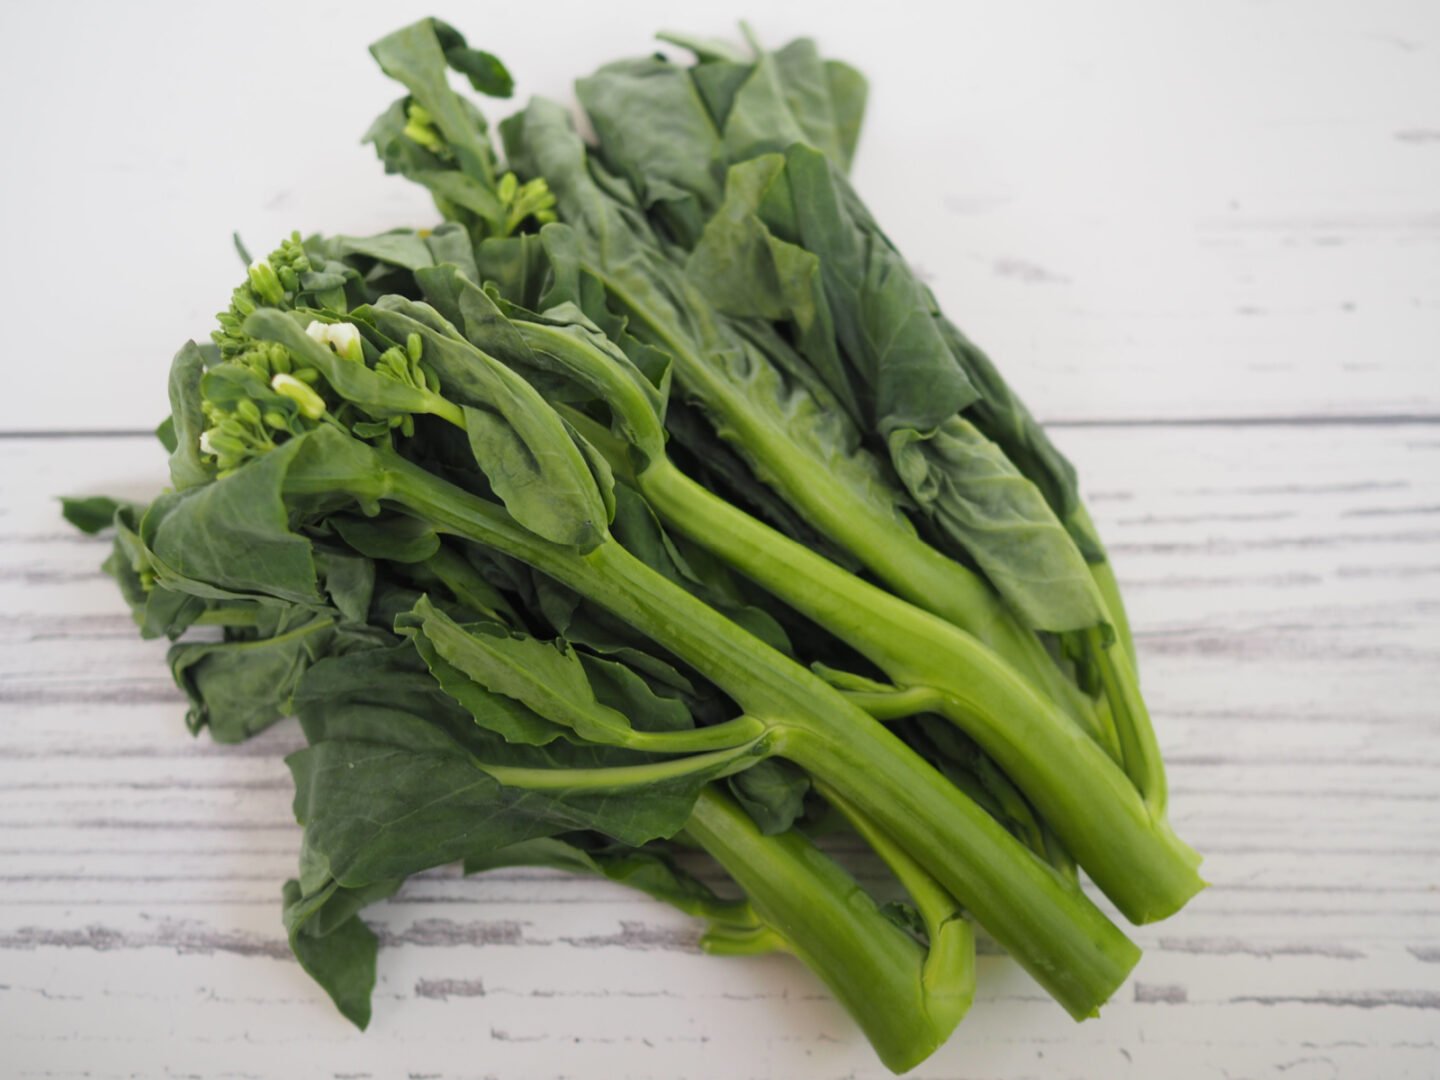 Chinese broccoli is also known as kai lan or gai lan.